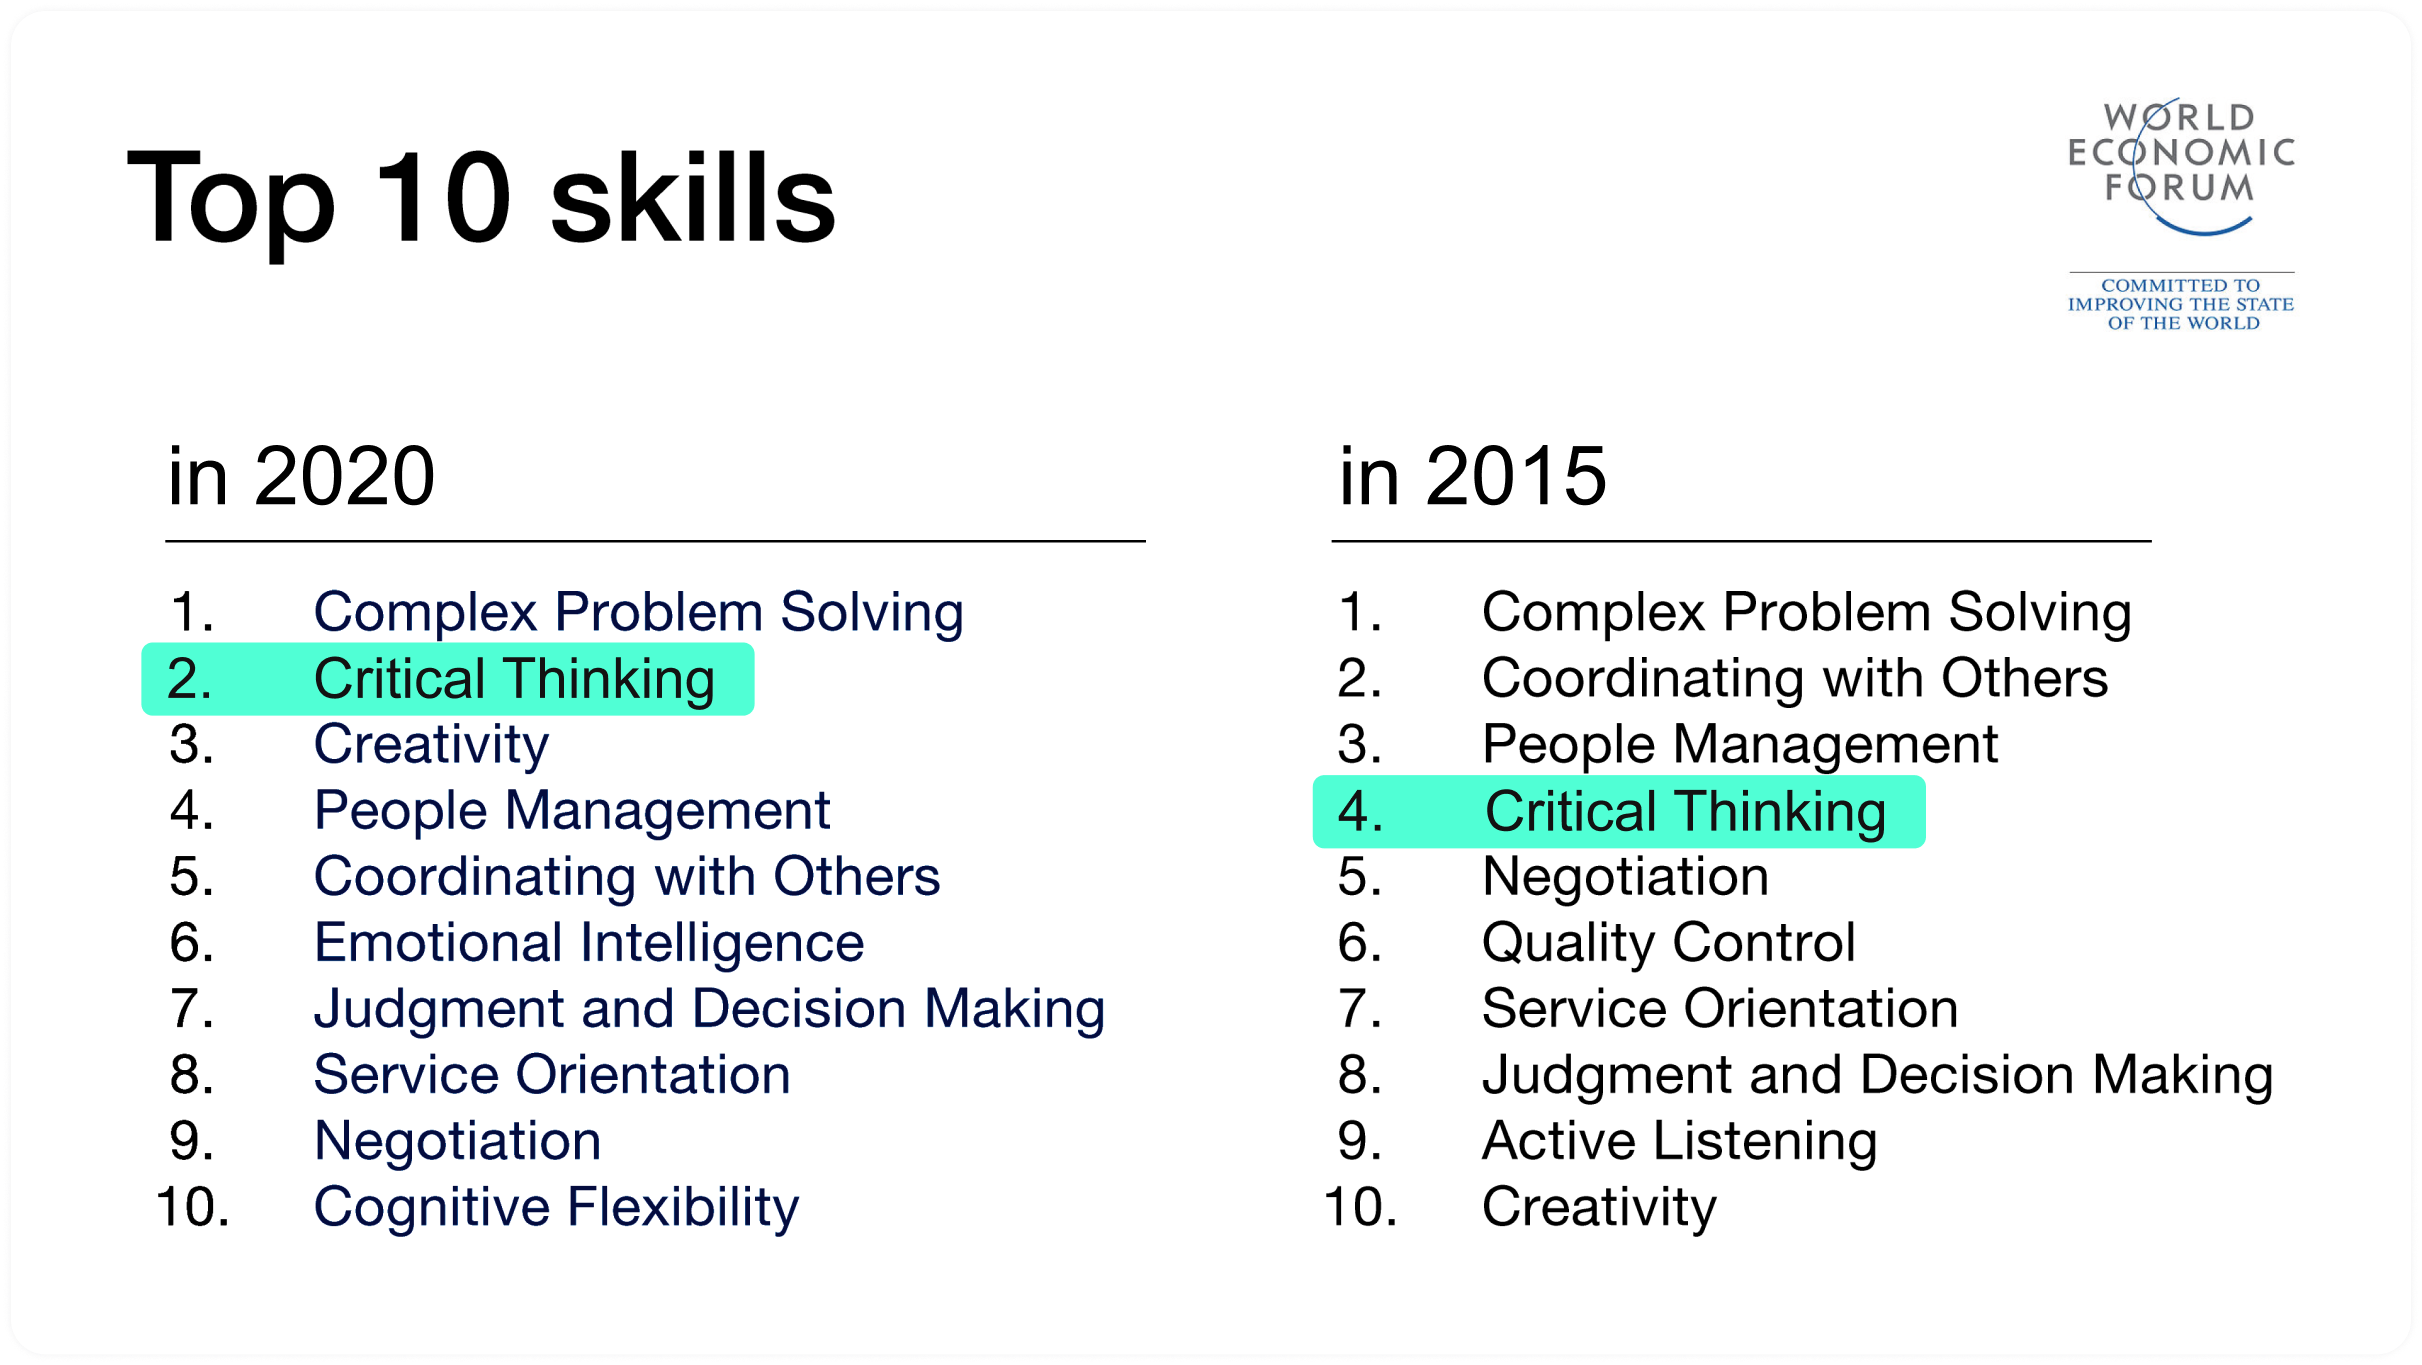 Скриншот статьи с сайта Всемирного экономического форума, который сравнивает десять самых востребованных навыков в 2015 и 2020 году